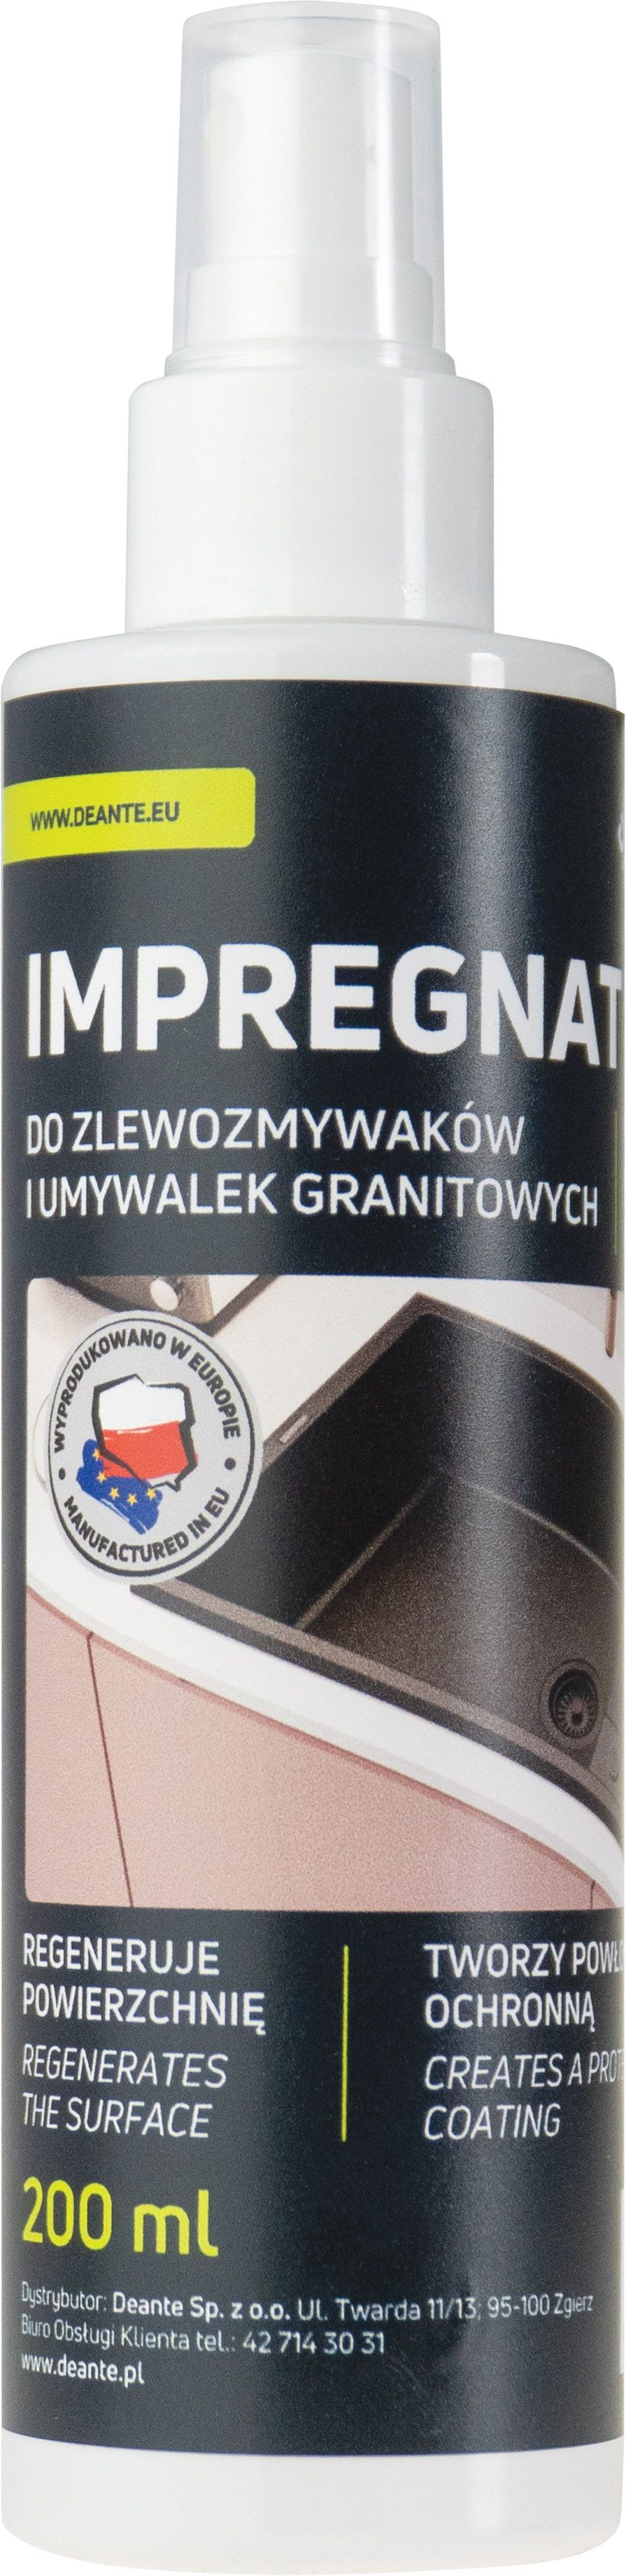 Protector, for granite products - 200 ml - ZZZ_020I - Główne zdjęcie produktowe